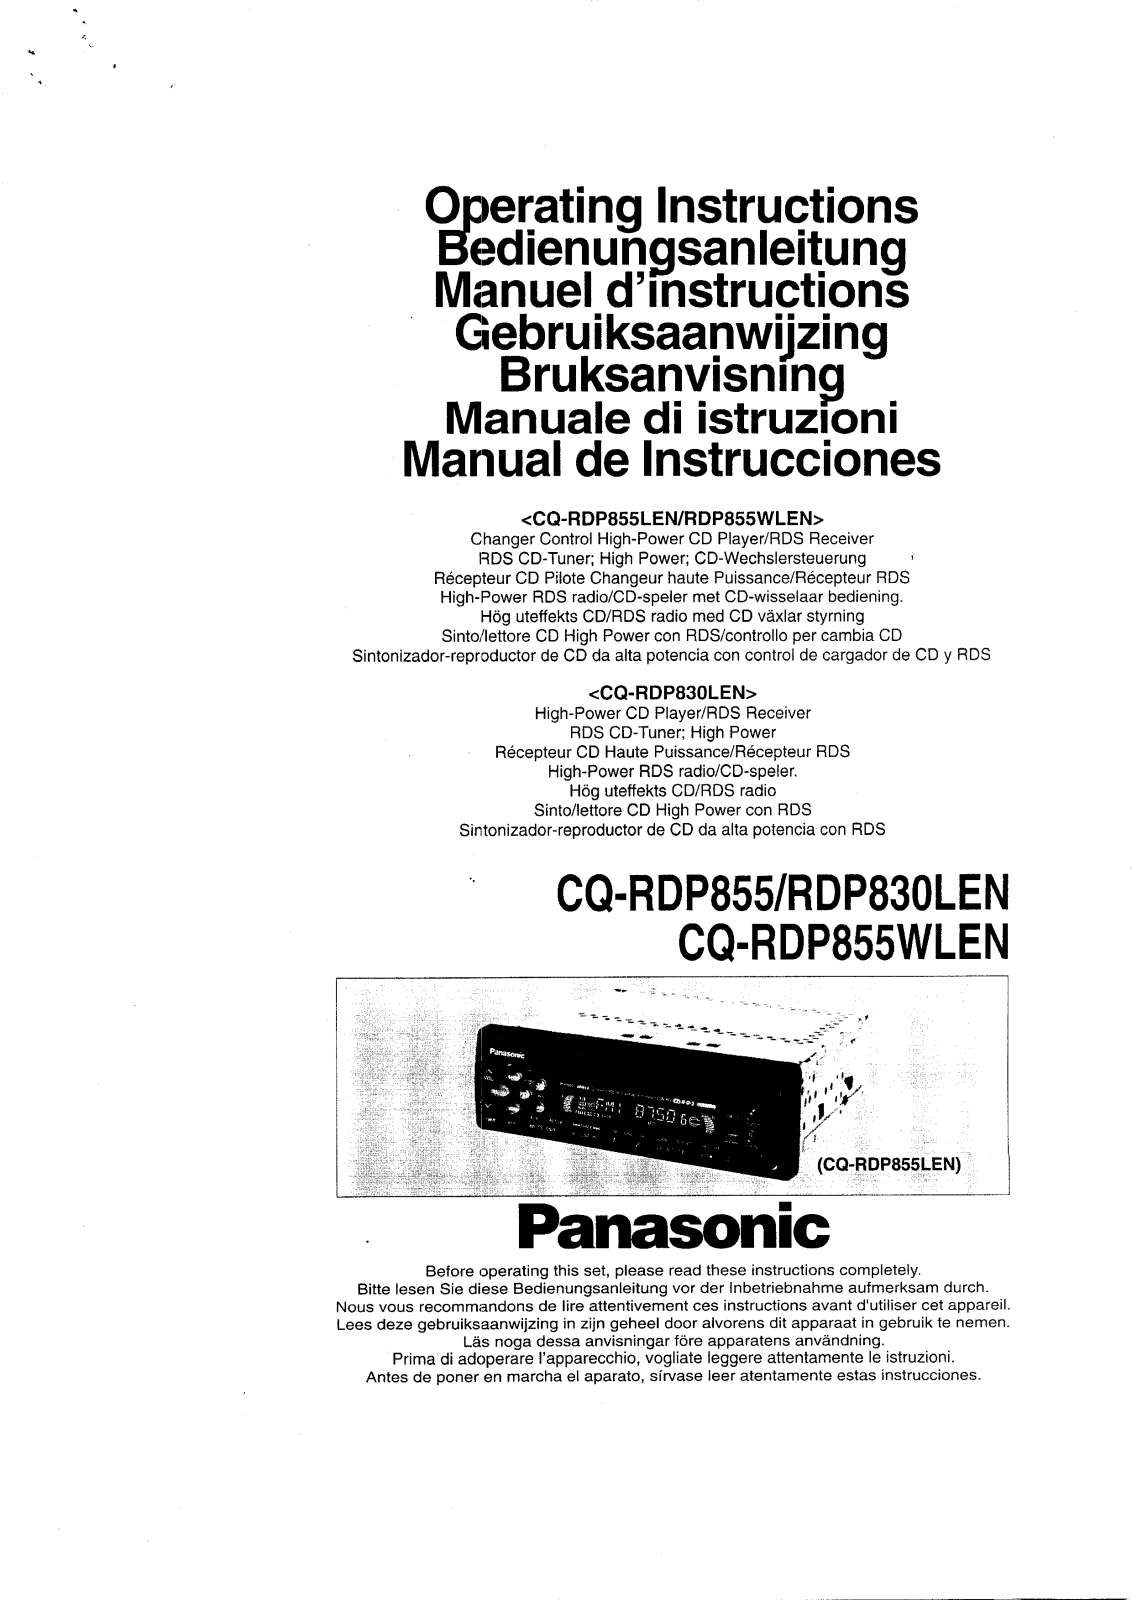 PANASONIC CQRDP830LEN, CQRDP855LEN User Manual